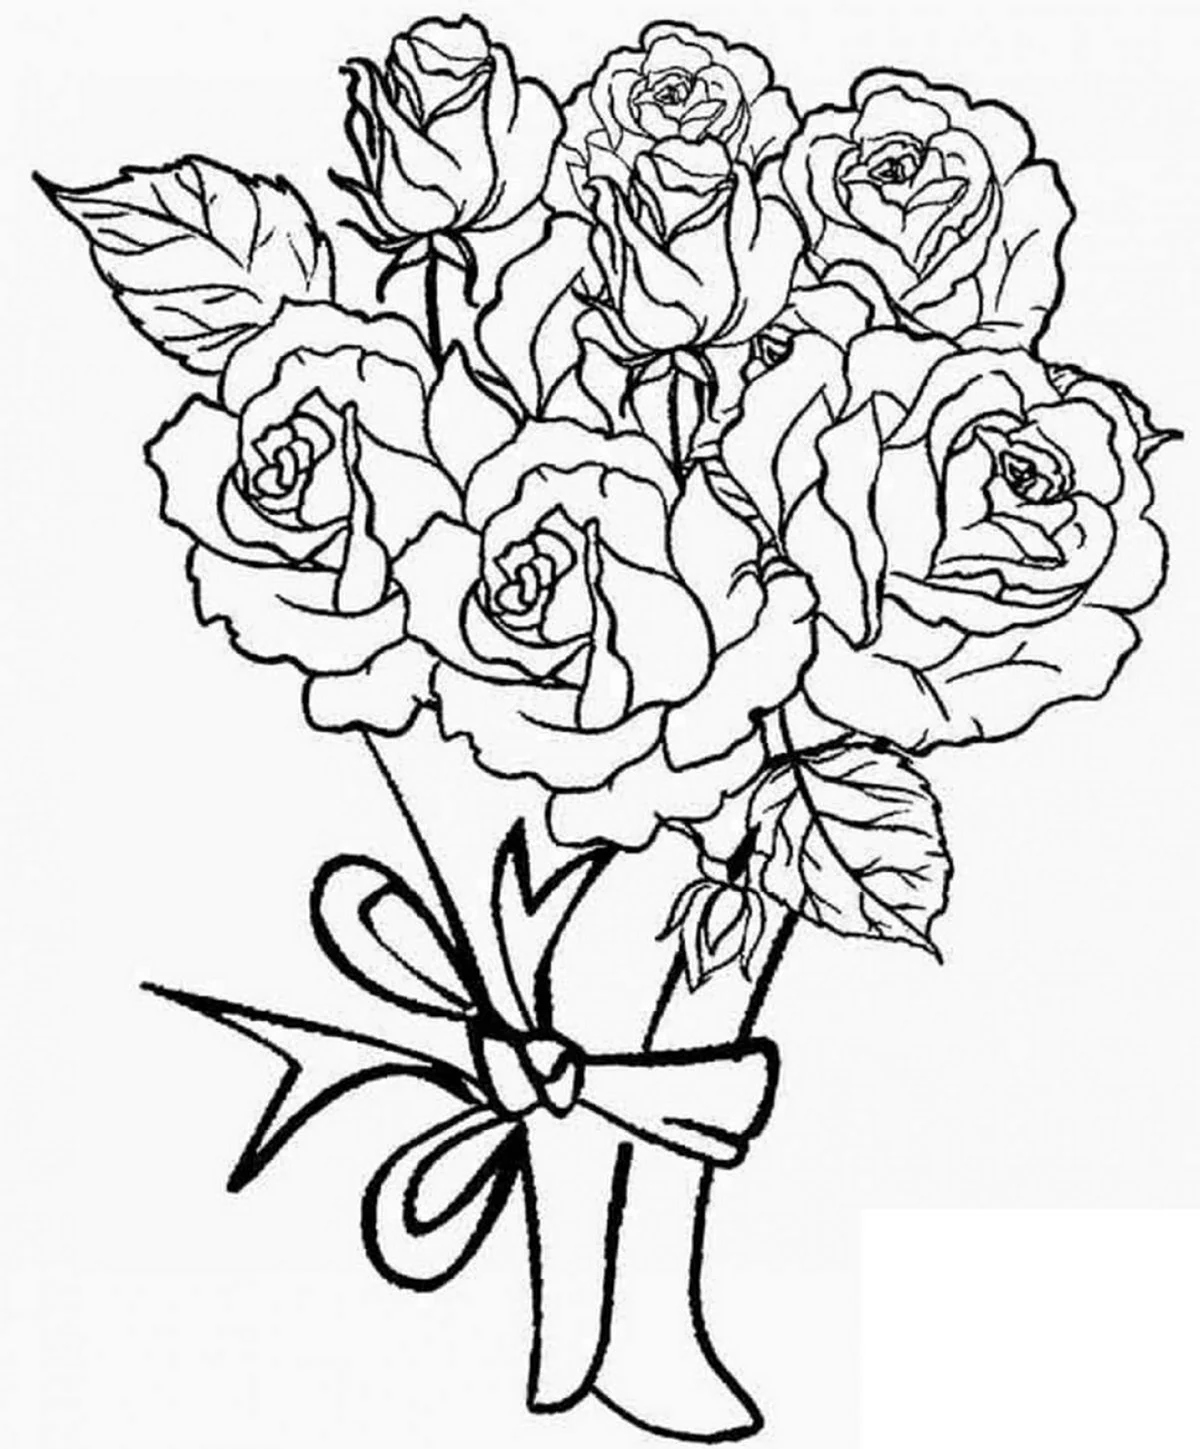 Раскраска букет роз. Для срисовки